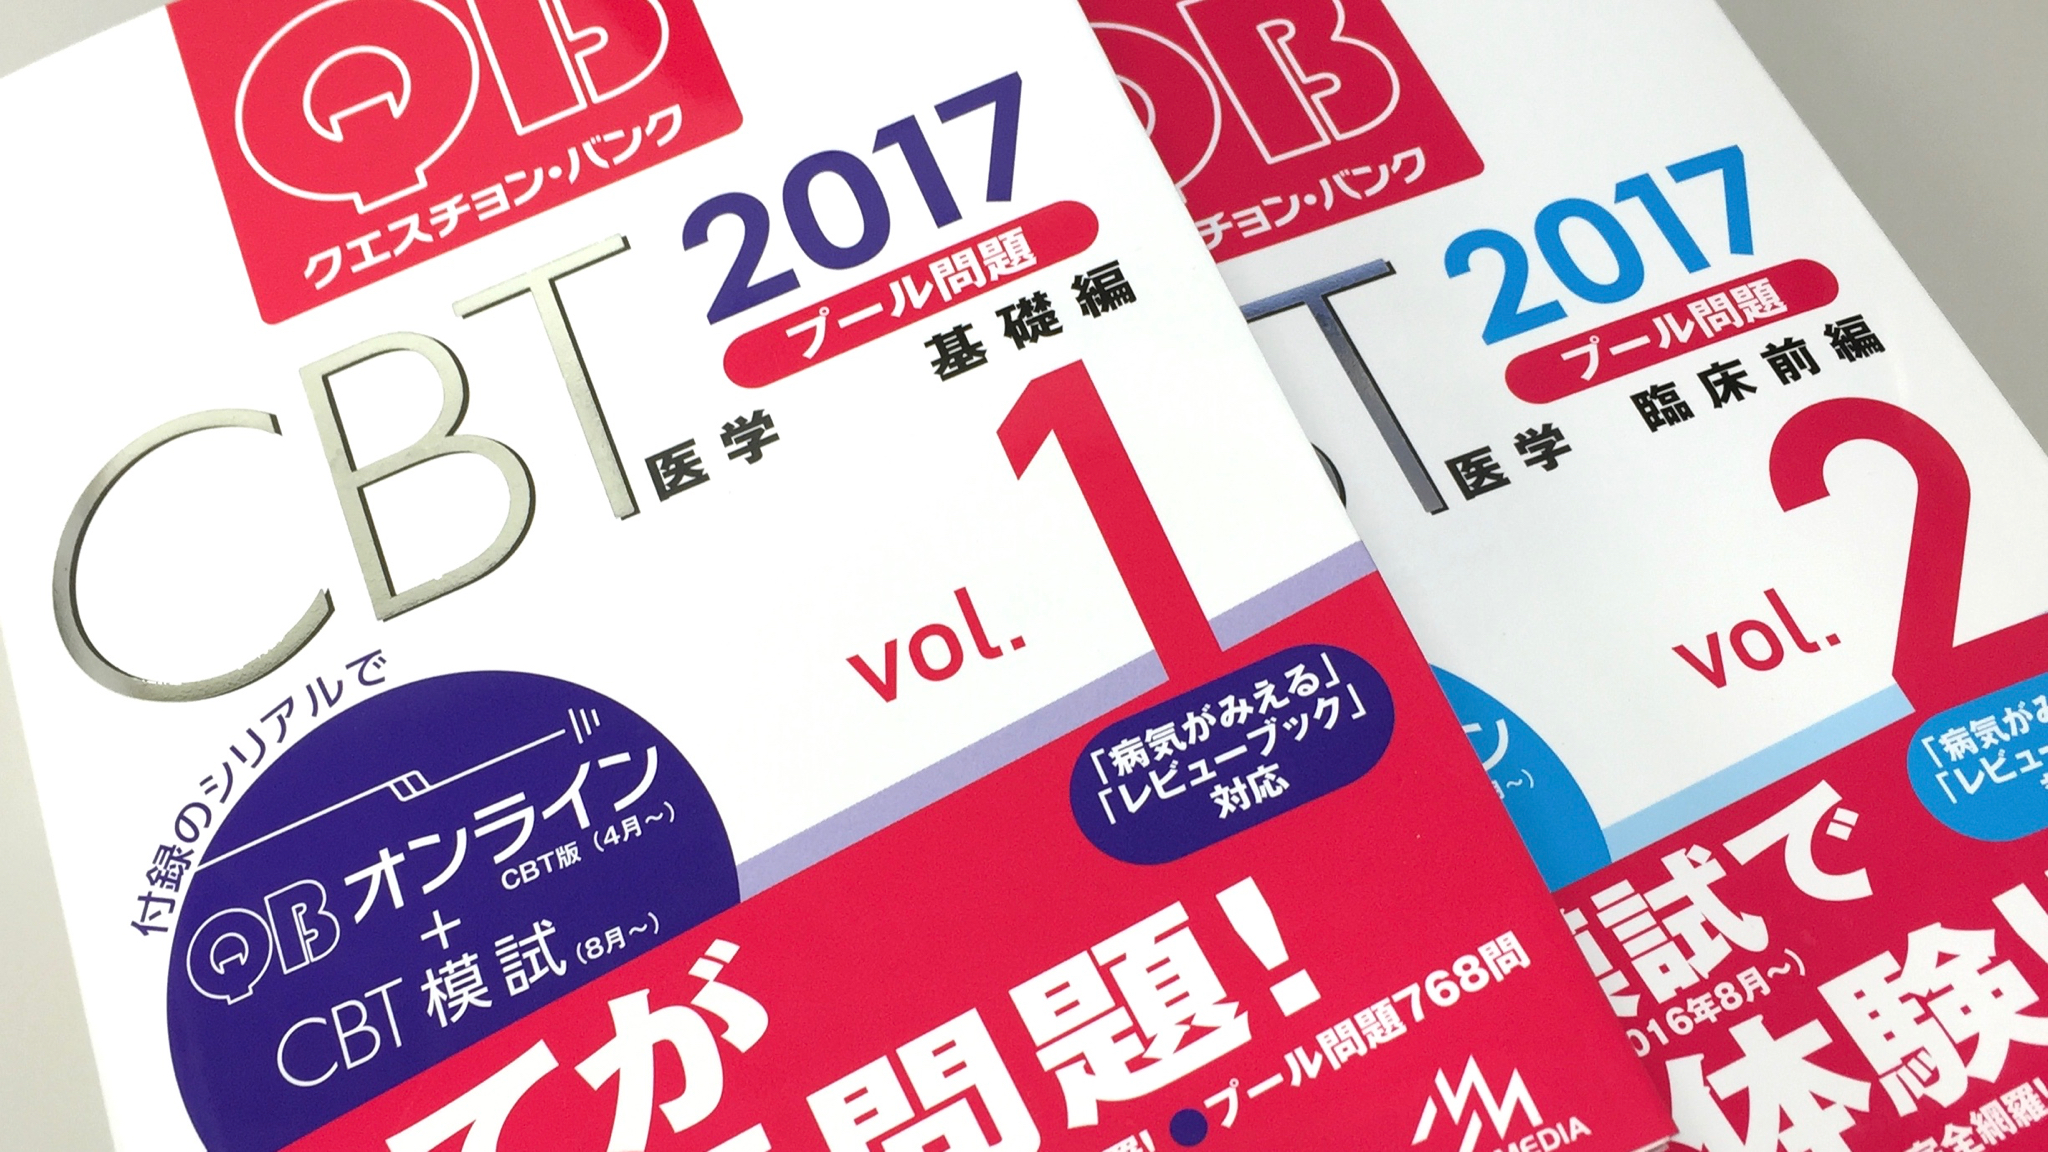 クエスチョン バンク CBT 2019 vol.1 プール問題 基礎編 - rehda.com